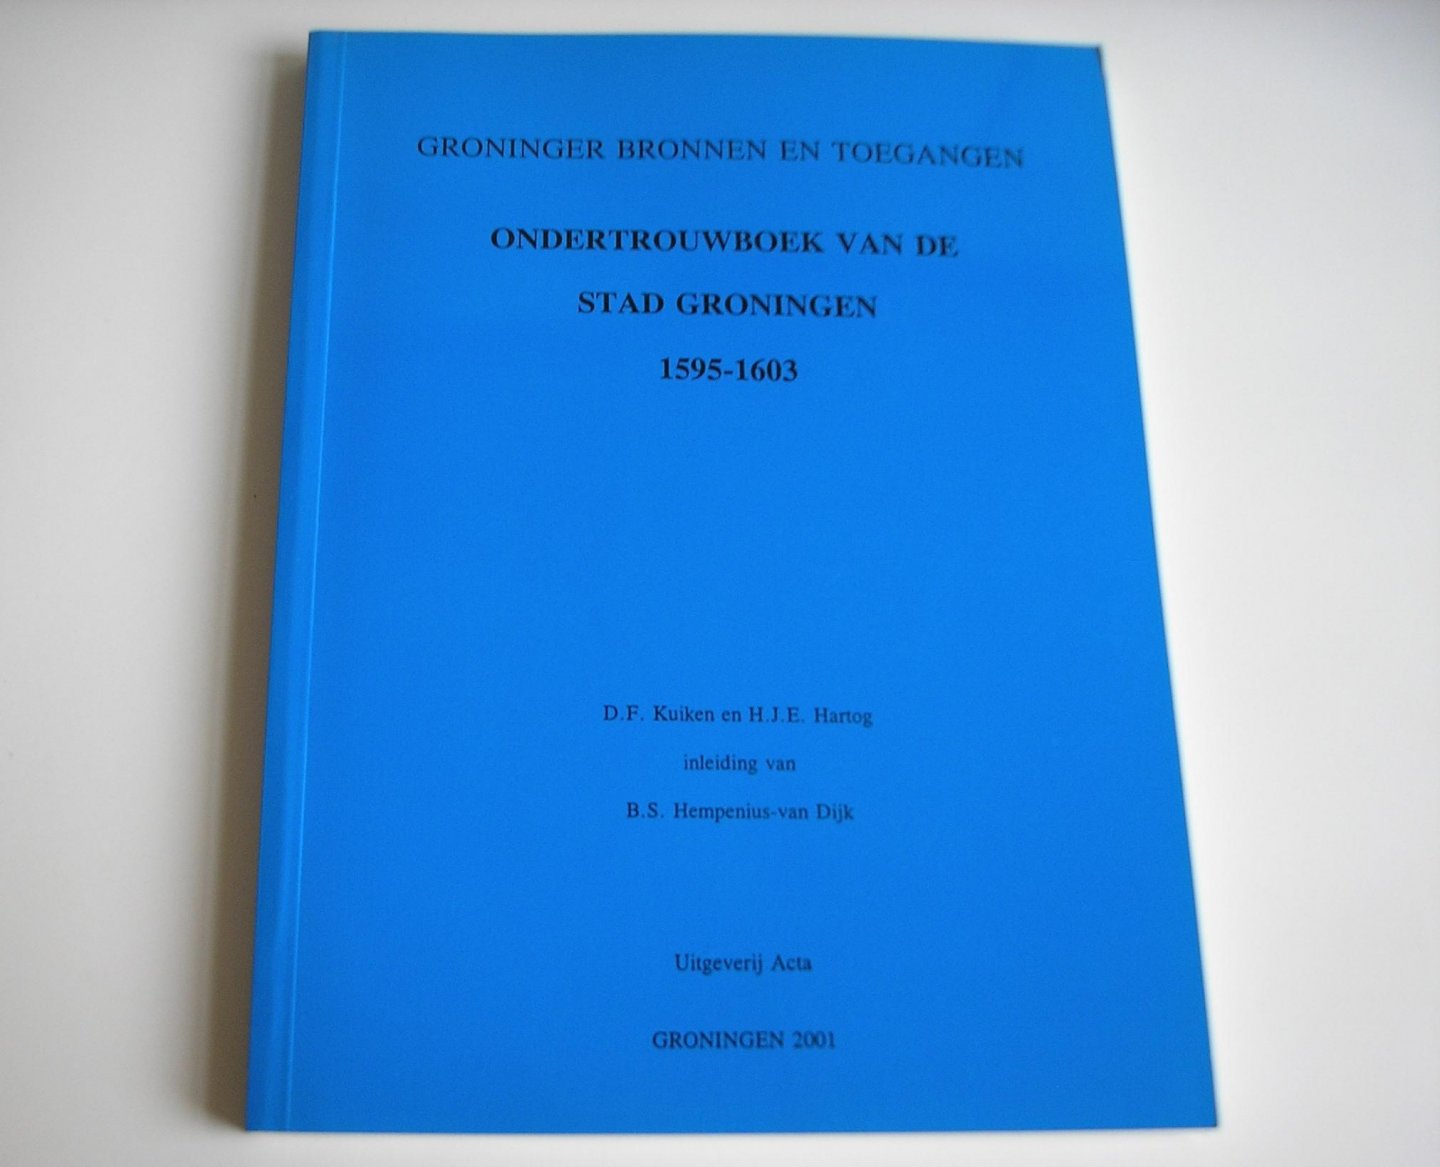 Kuiken, D.F., Hartog, H.J.E. (inleiding van B.S. Hempenius - van Dijk) - Ondertrouwboek van de stad Groningen 1595-1603.